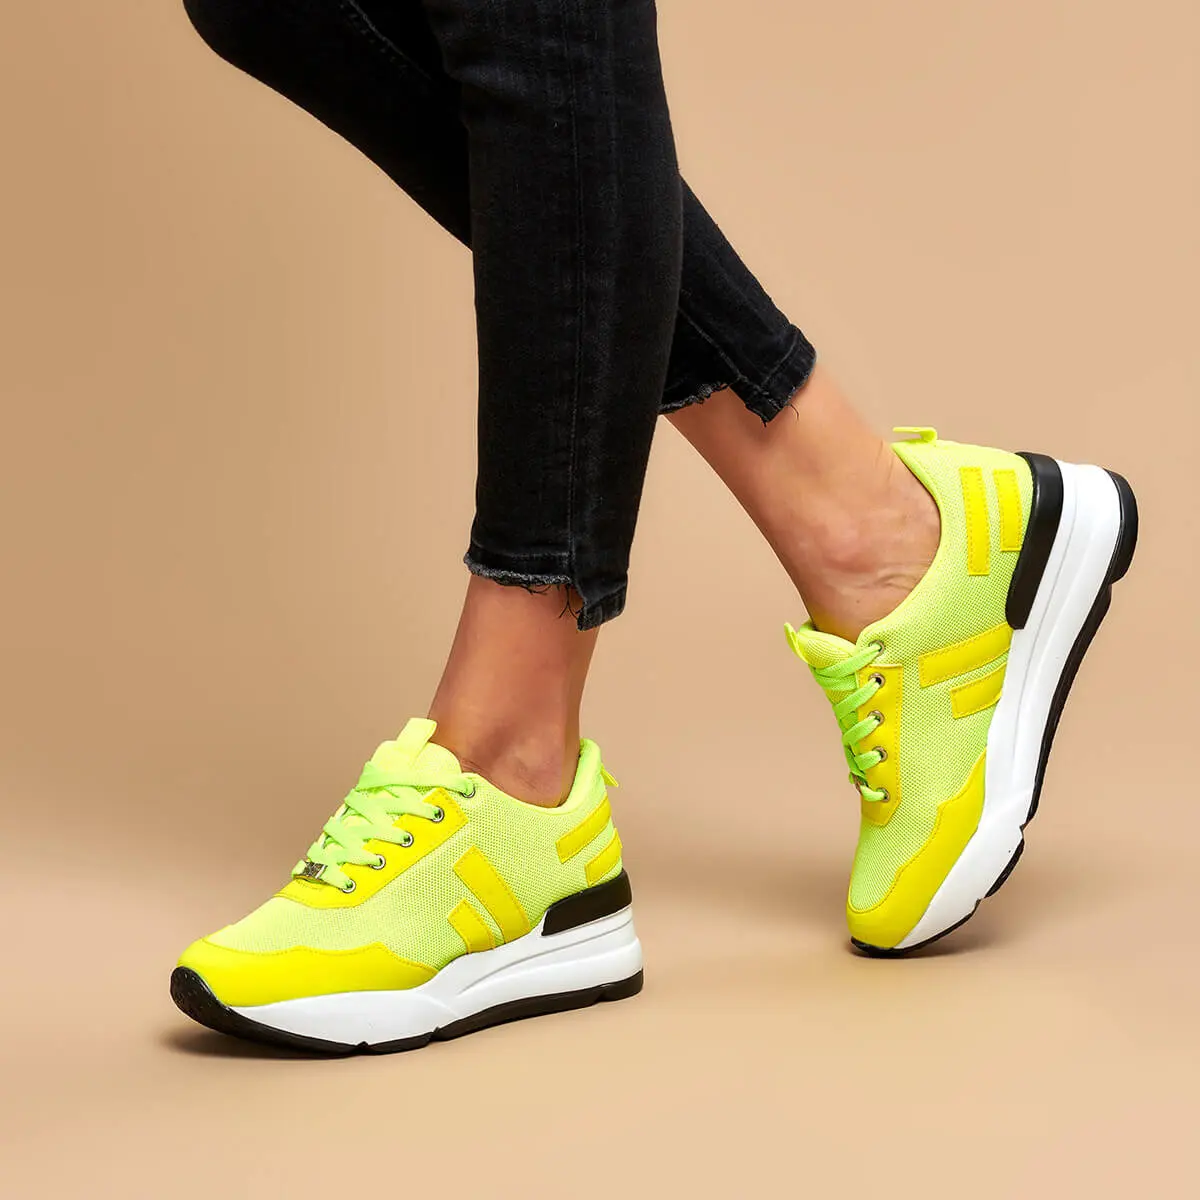 FLO Yellow женская обувь для бега спортивная обувь 19K-965 BUTIGO